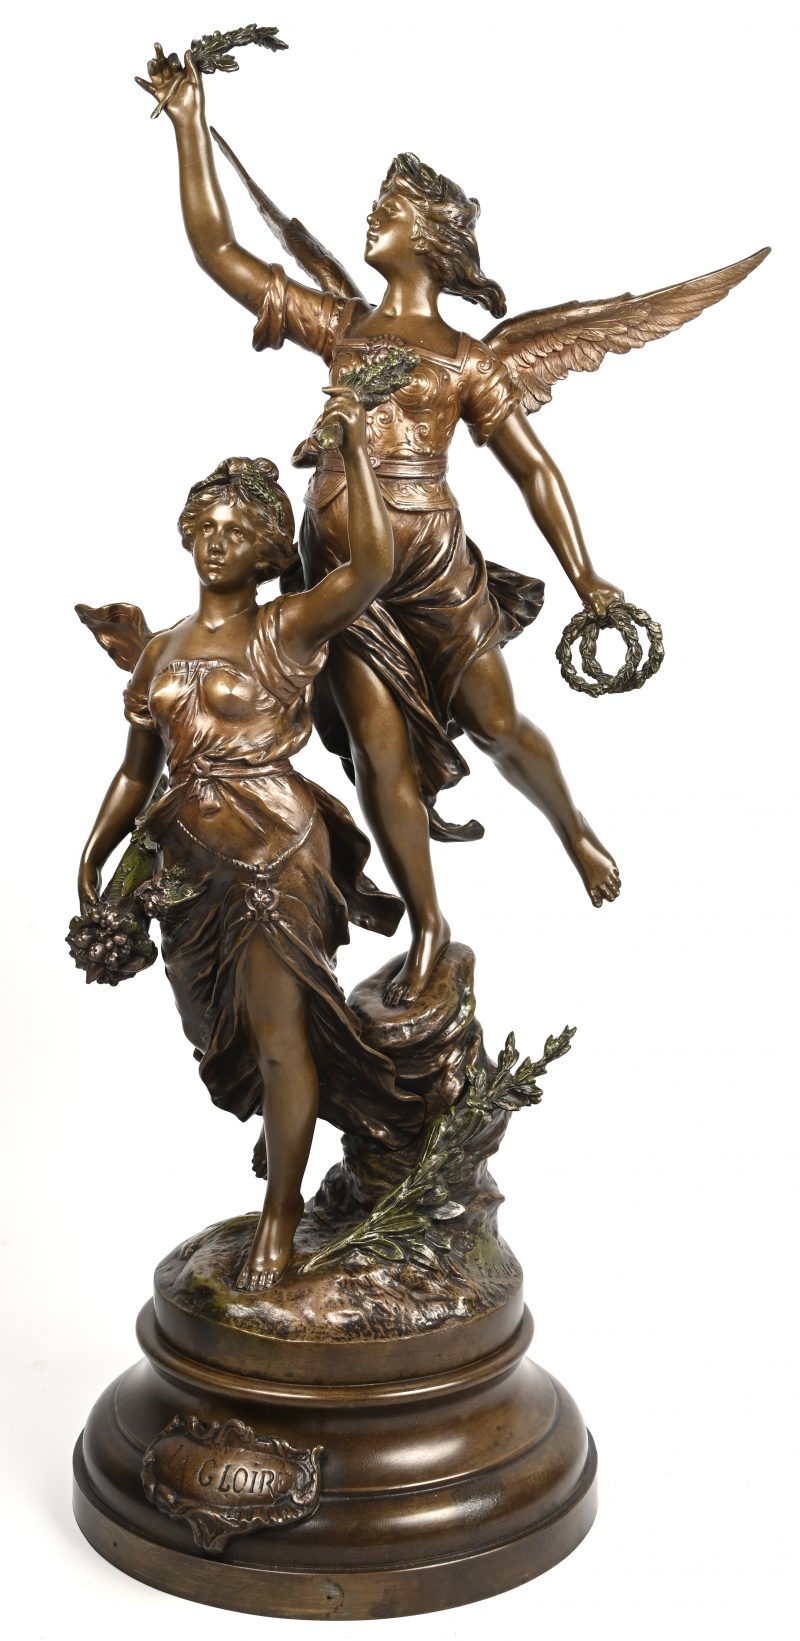 ‘La Gloire’, een zamakken beeld met een engel en een lopende dame, naar Moreau.